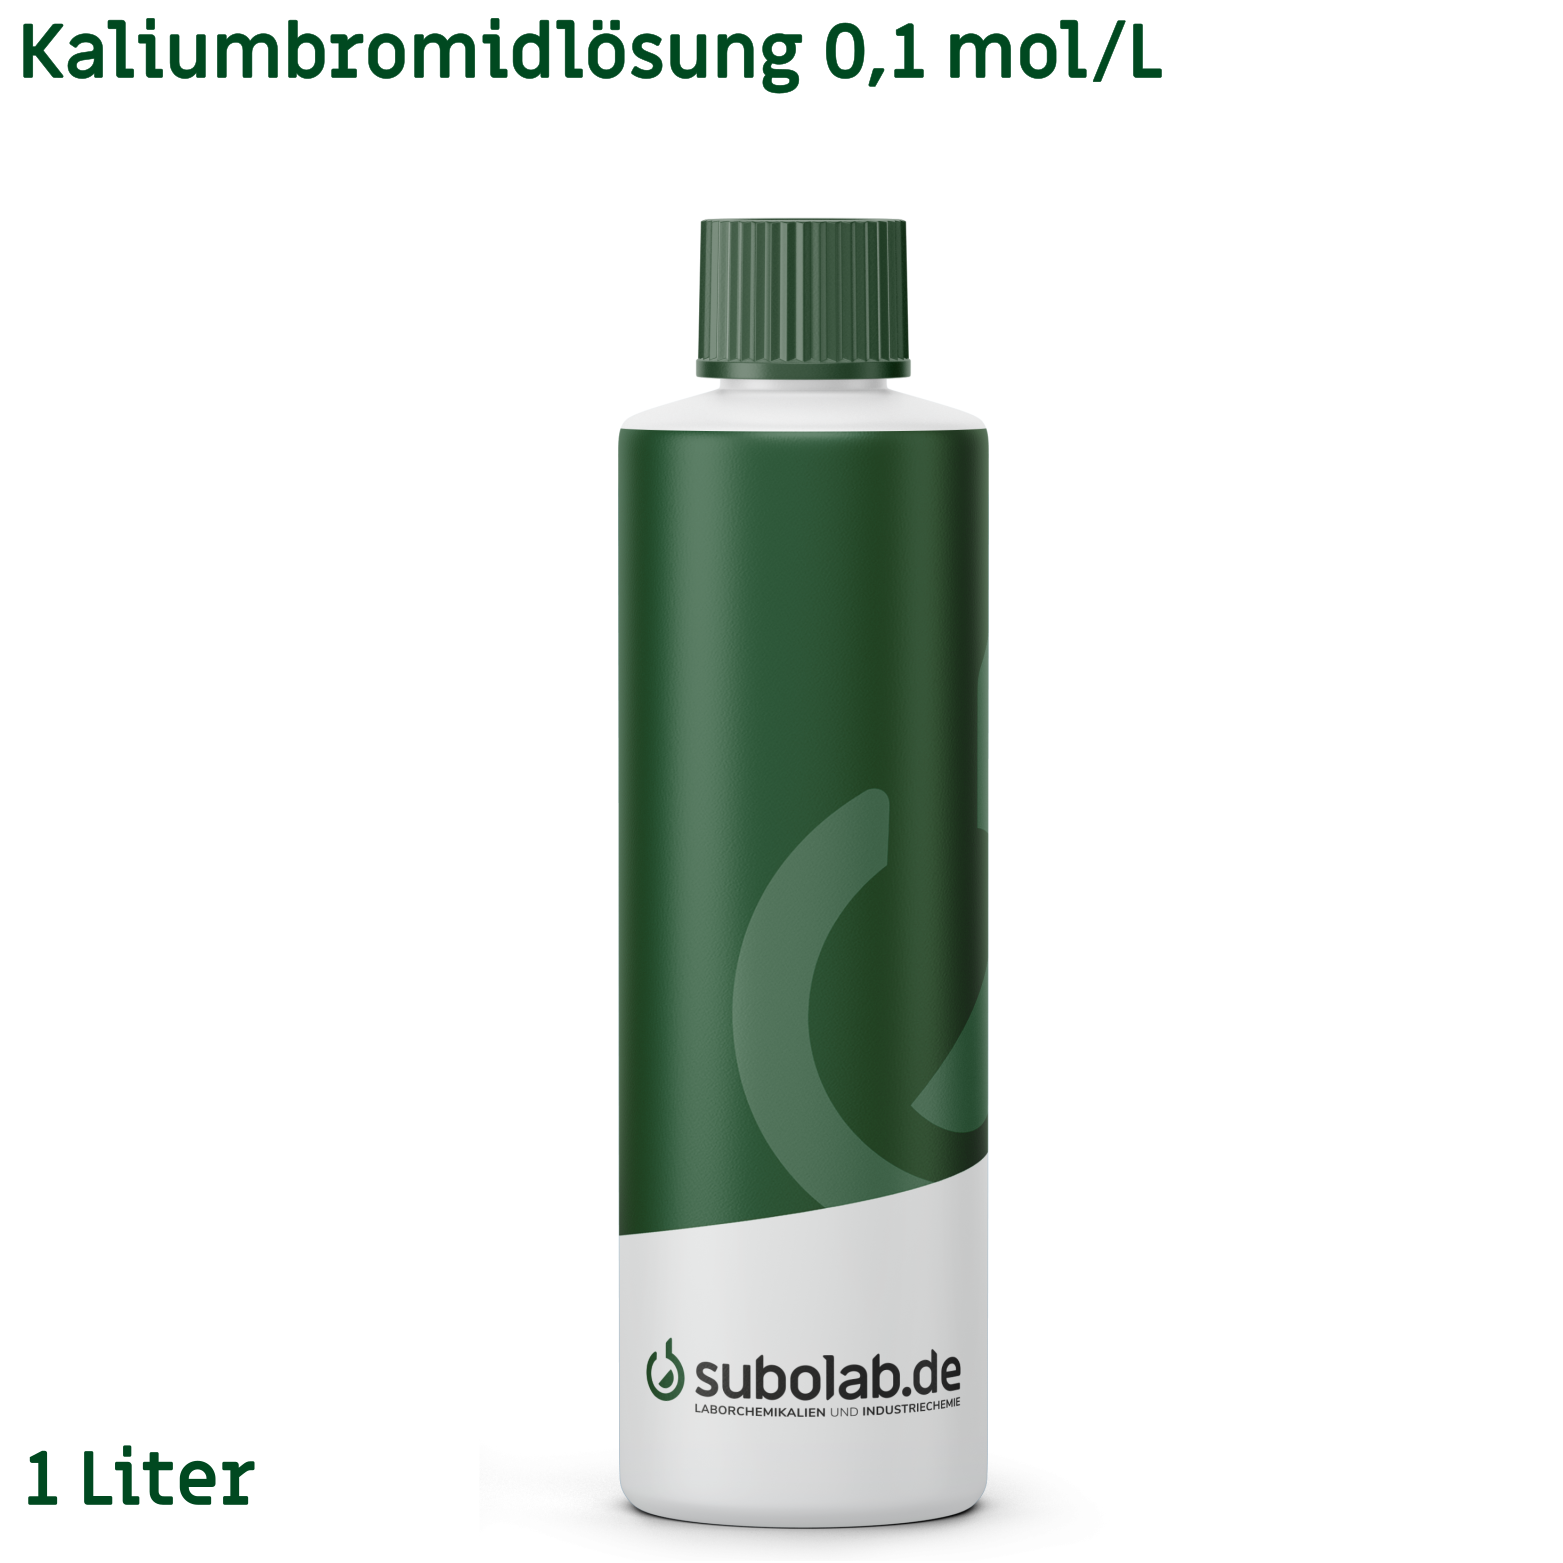 Bild von Kaliumbromidlösung 0,1 mol/L (1 Liter)